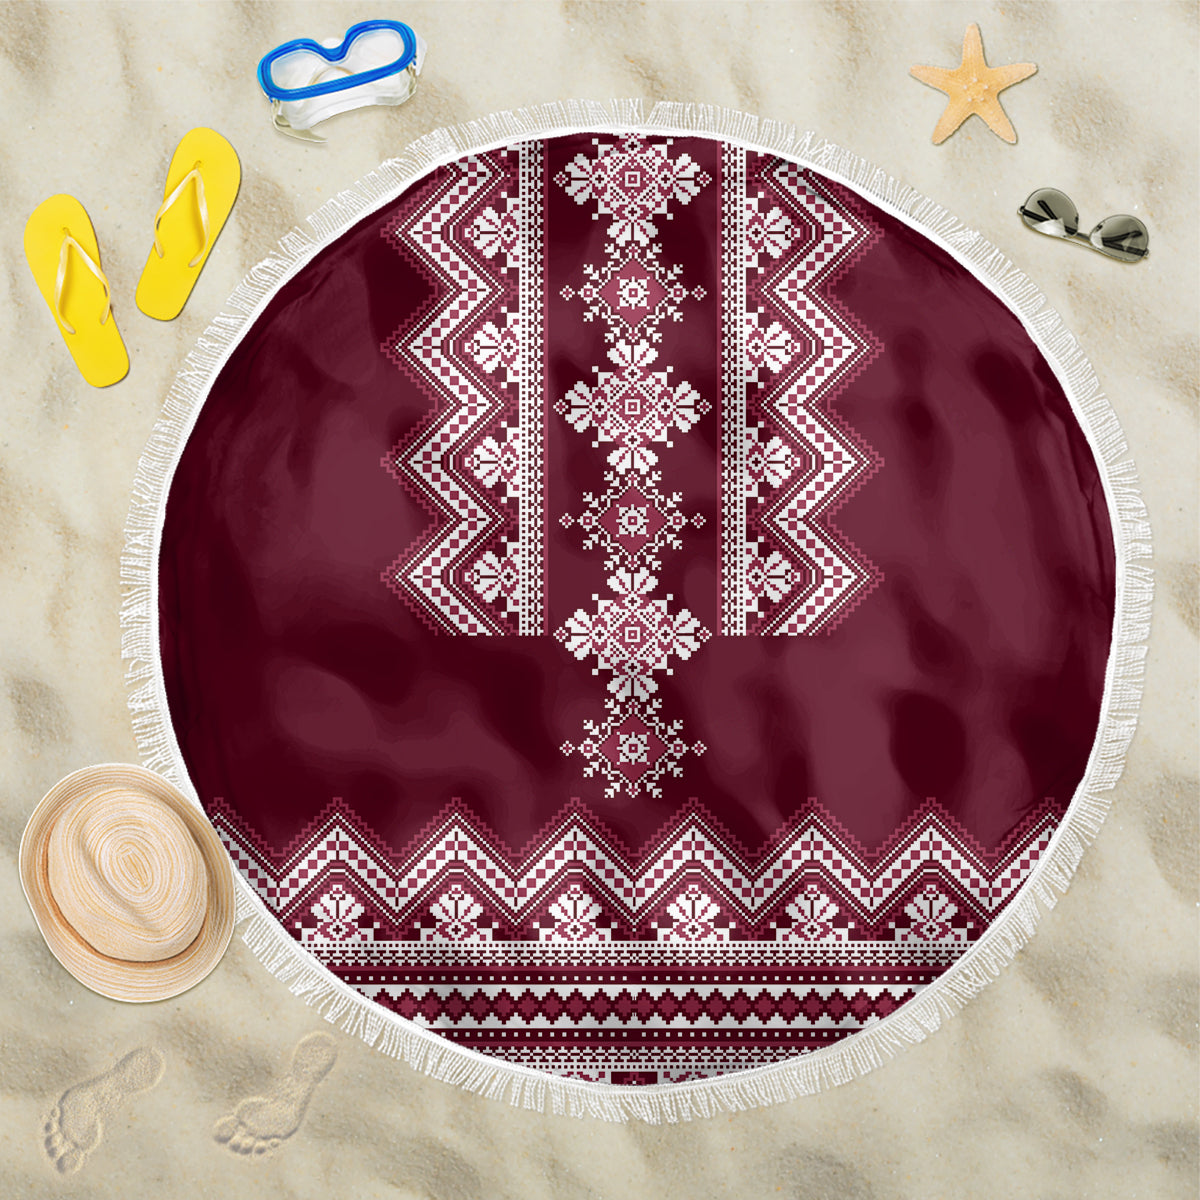 ukraine-folk-pattern-beach-blanket-ukrainian-wine-red-version